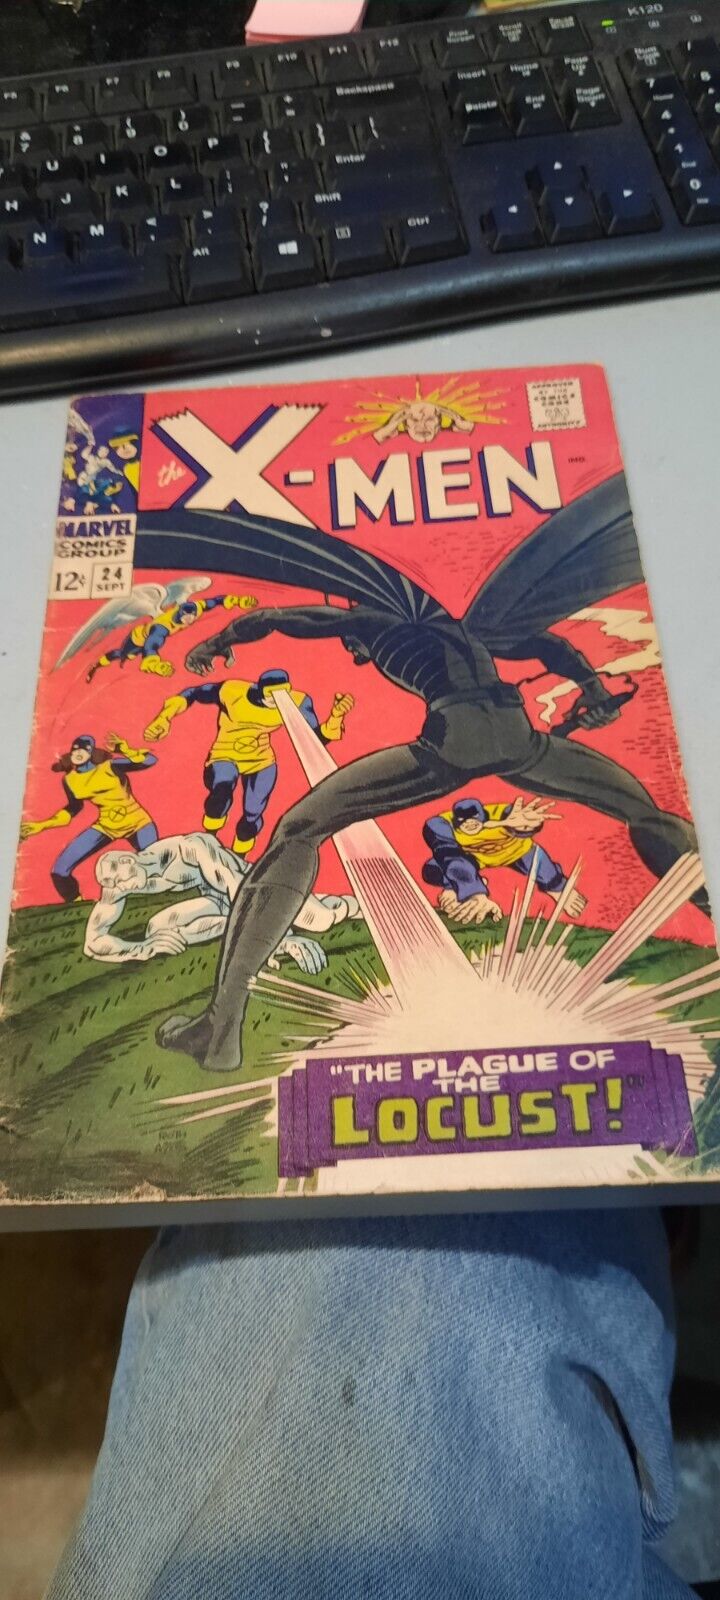 X-MEN #24 (1966), Locust, Marvel Comics